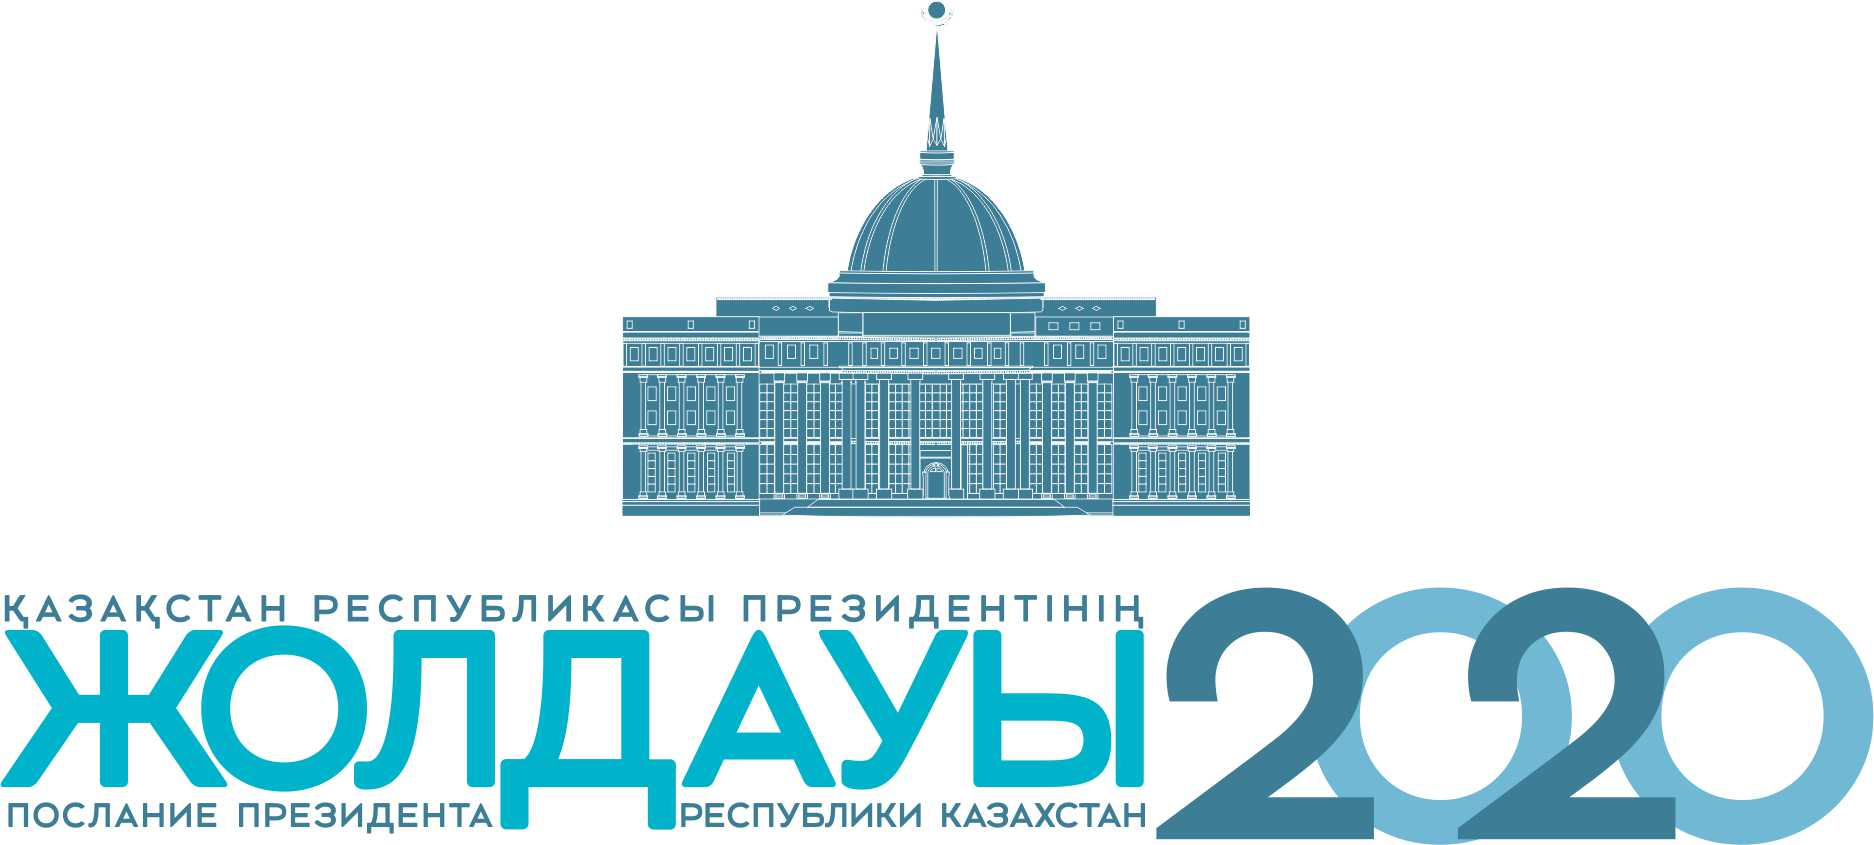  Ежегодное Послание Президента Республики Казахстан: «Вместе мы сильнее»